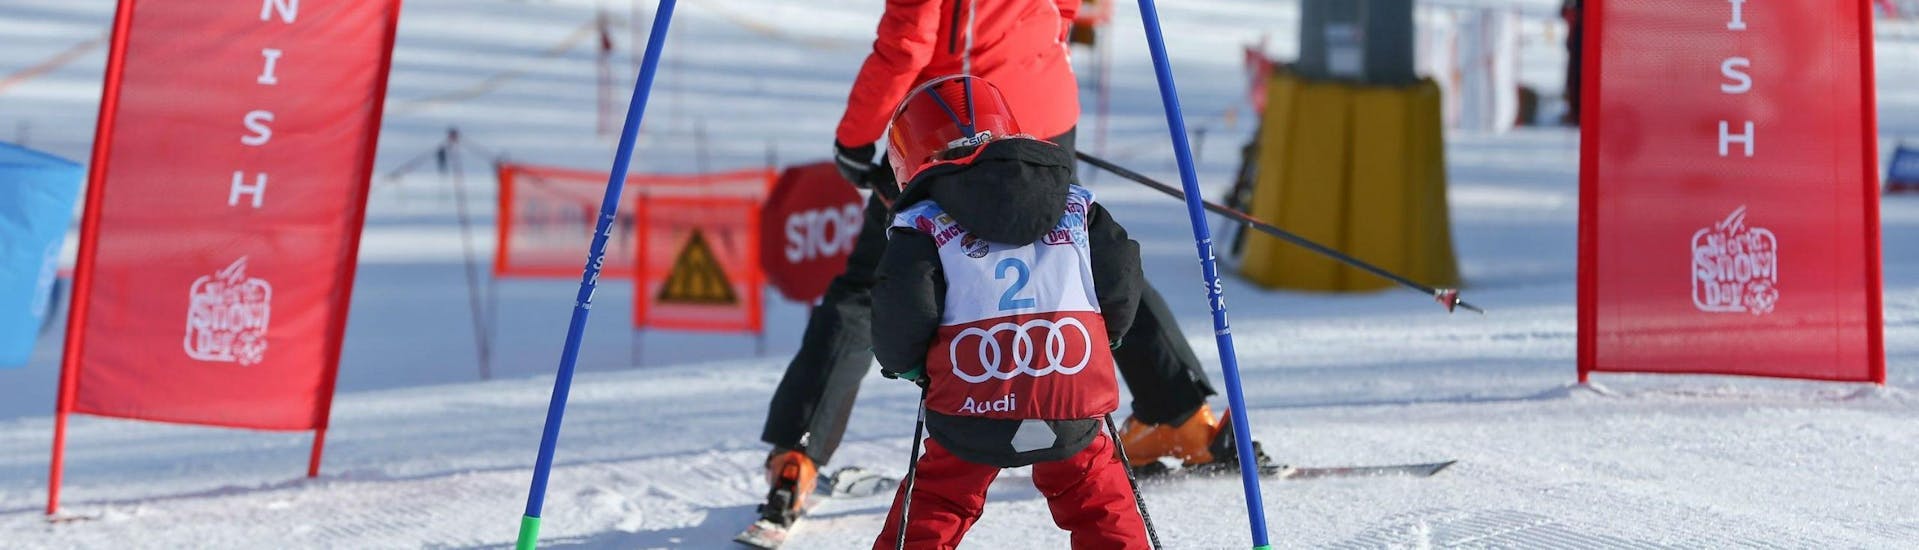 Un niño pequeño practica su técnica de esquí en una pista de carreras en Cortina d'Ampezzo durante una de sus Clases de esquí para niños "Smart" (4-12 años) - Con experiencia organizada por la escuela de esquí Scuola Sci Cortina.